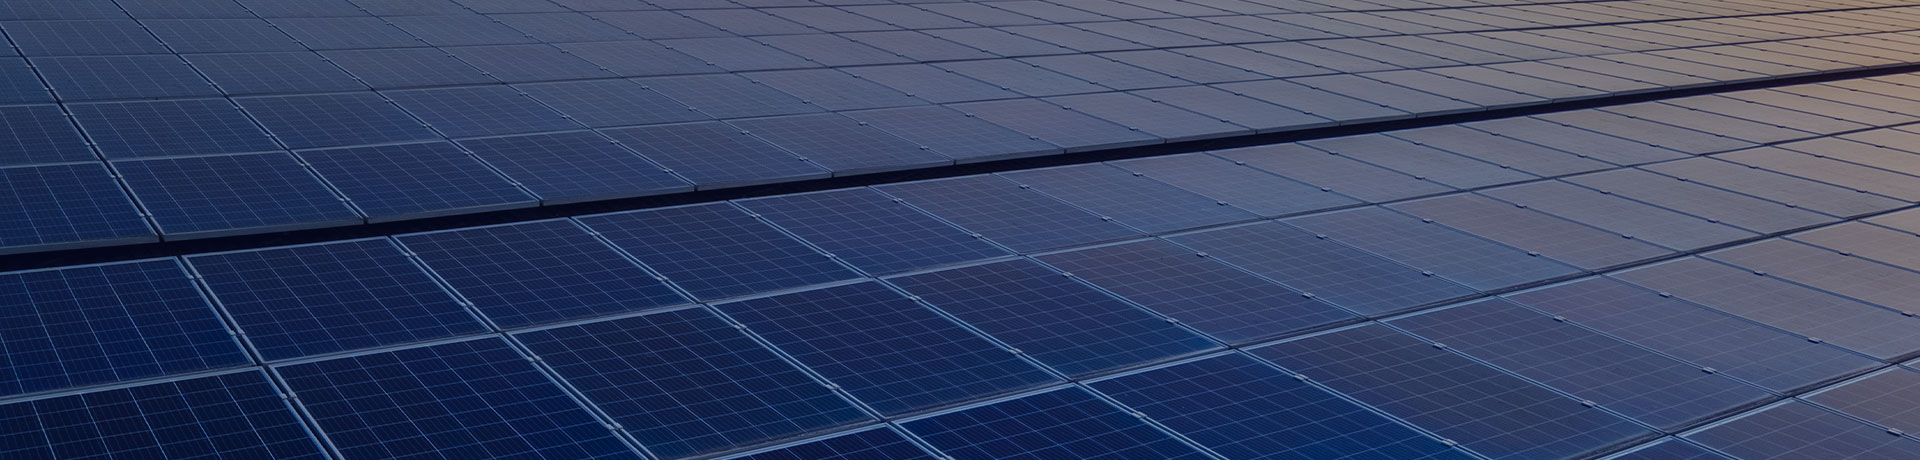 Panneaux solaires photovoltaïques bleus montés sur le toit d'un bâtiment pour produire de l'électricité propre et écologique au coucher du soleil. 